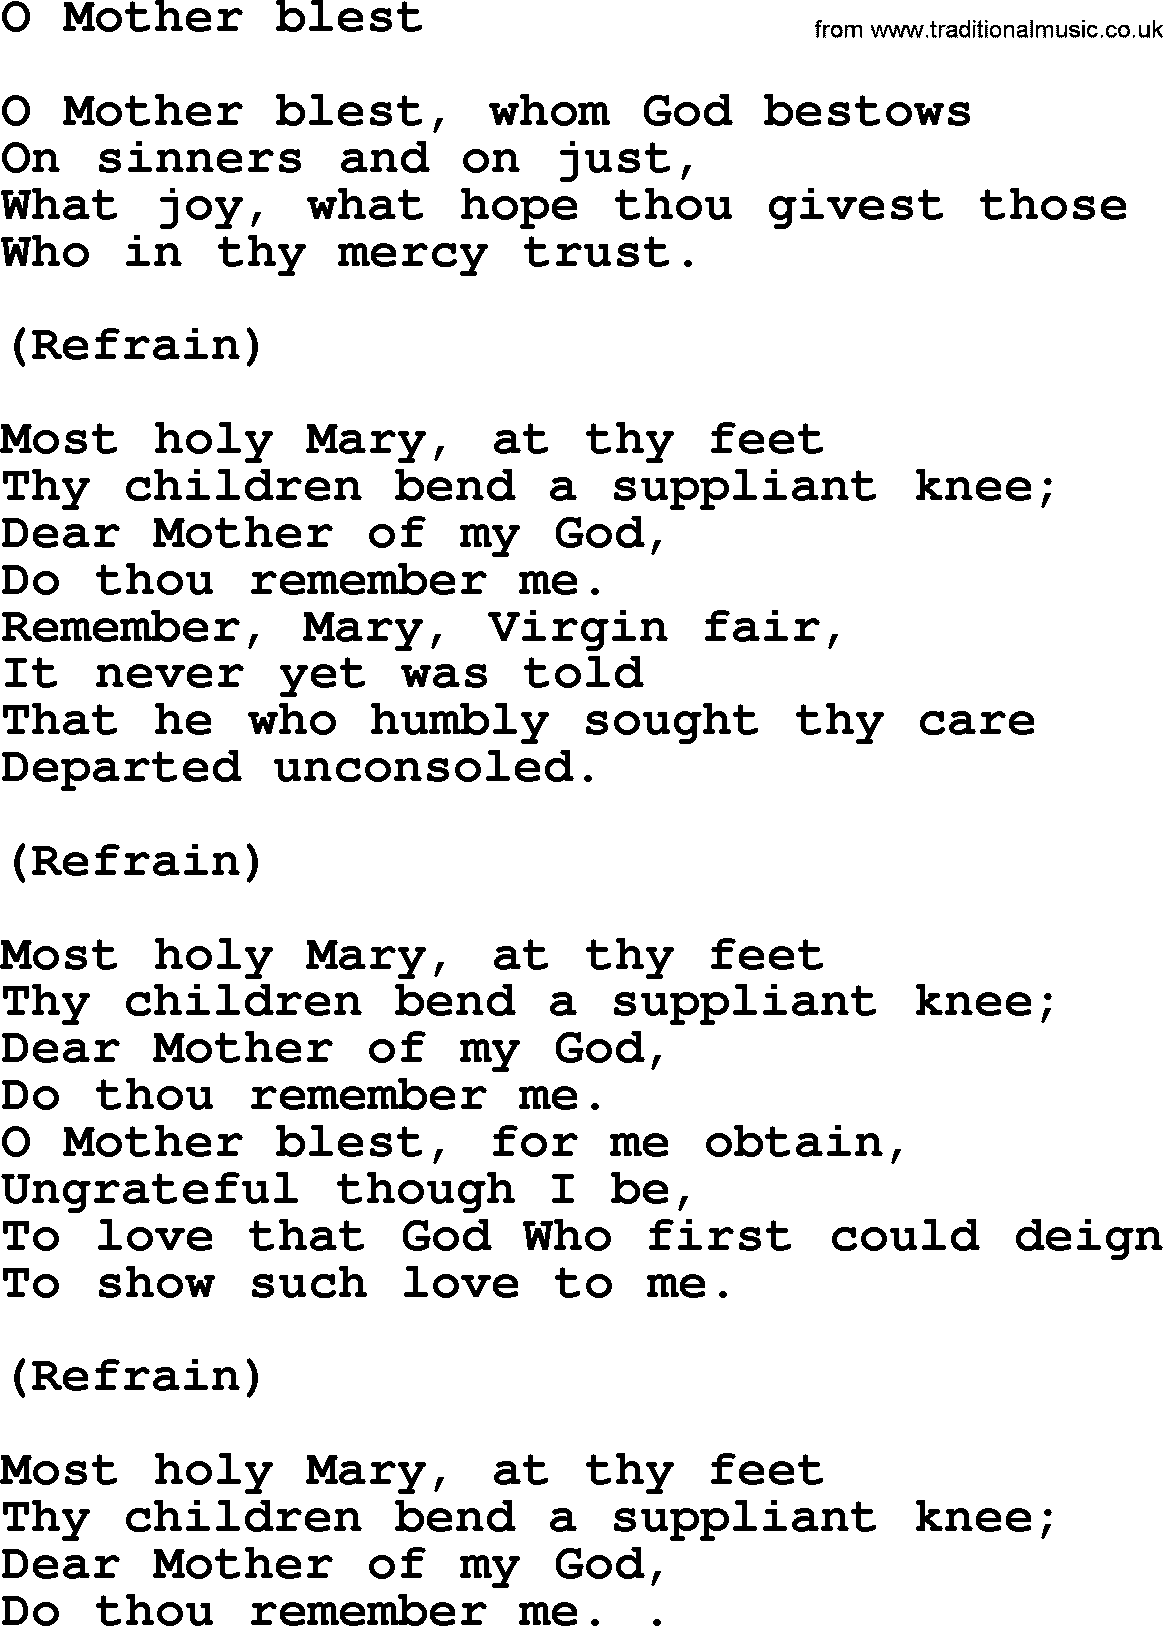 Catholic Hymn: O Mother Blest lyrics with PDF